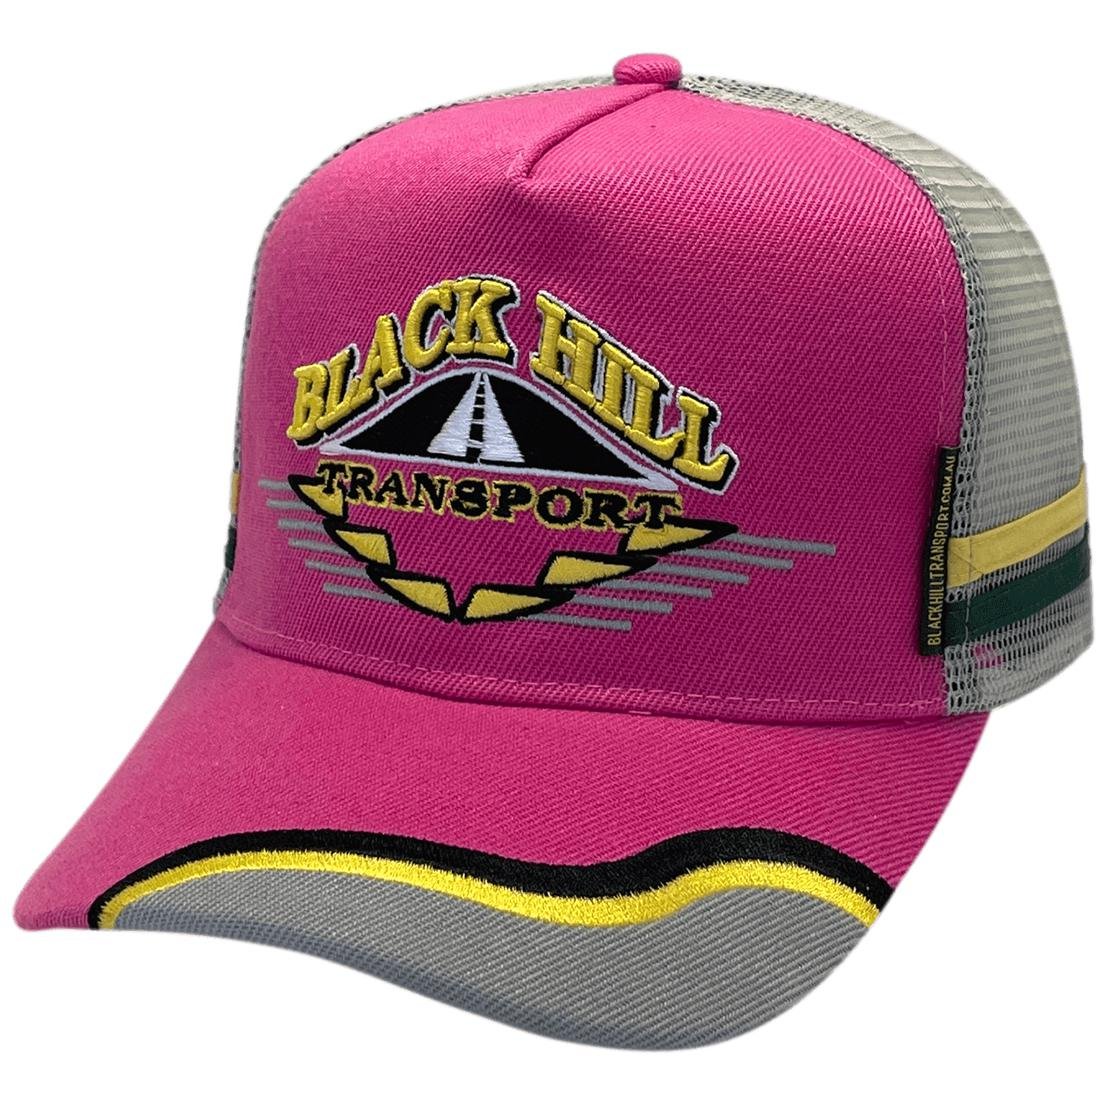 Black Hill Transport Power Aussie Trucker Hat